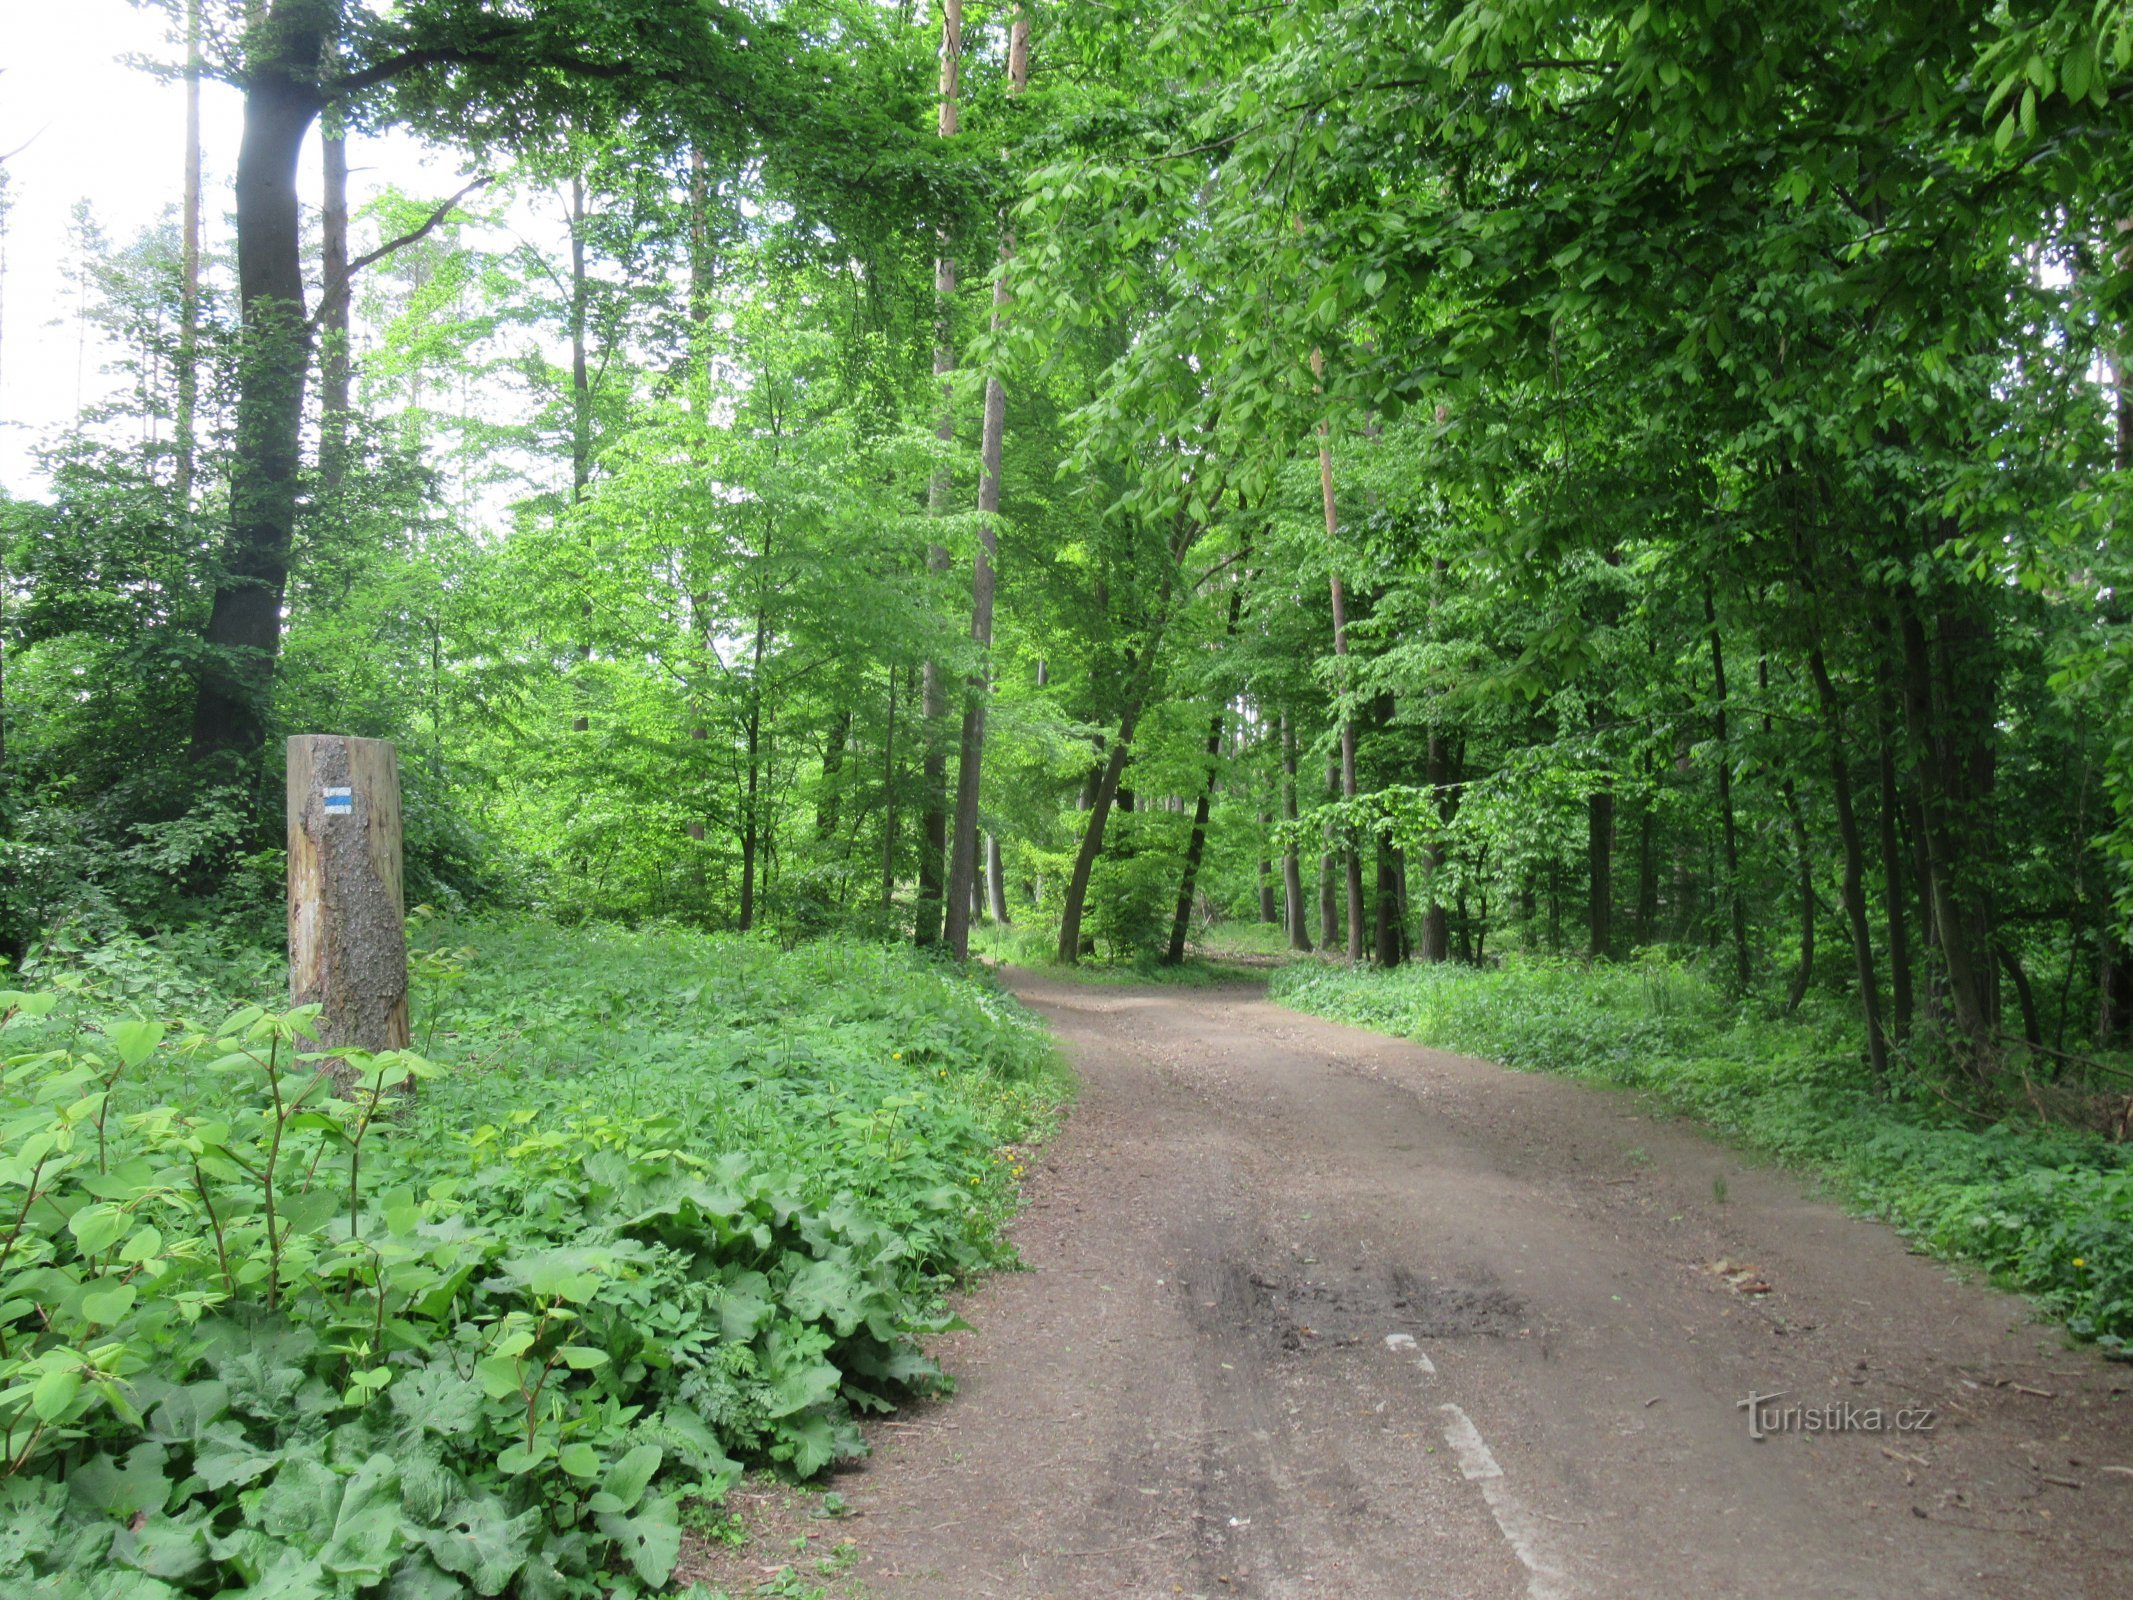 Die Route führt größtenteils durch Laubwälder